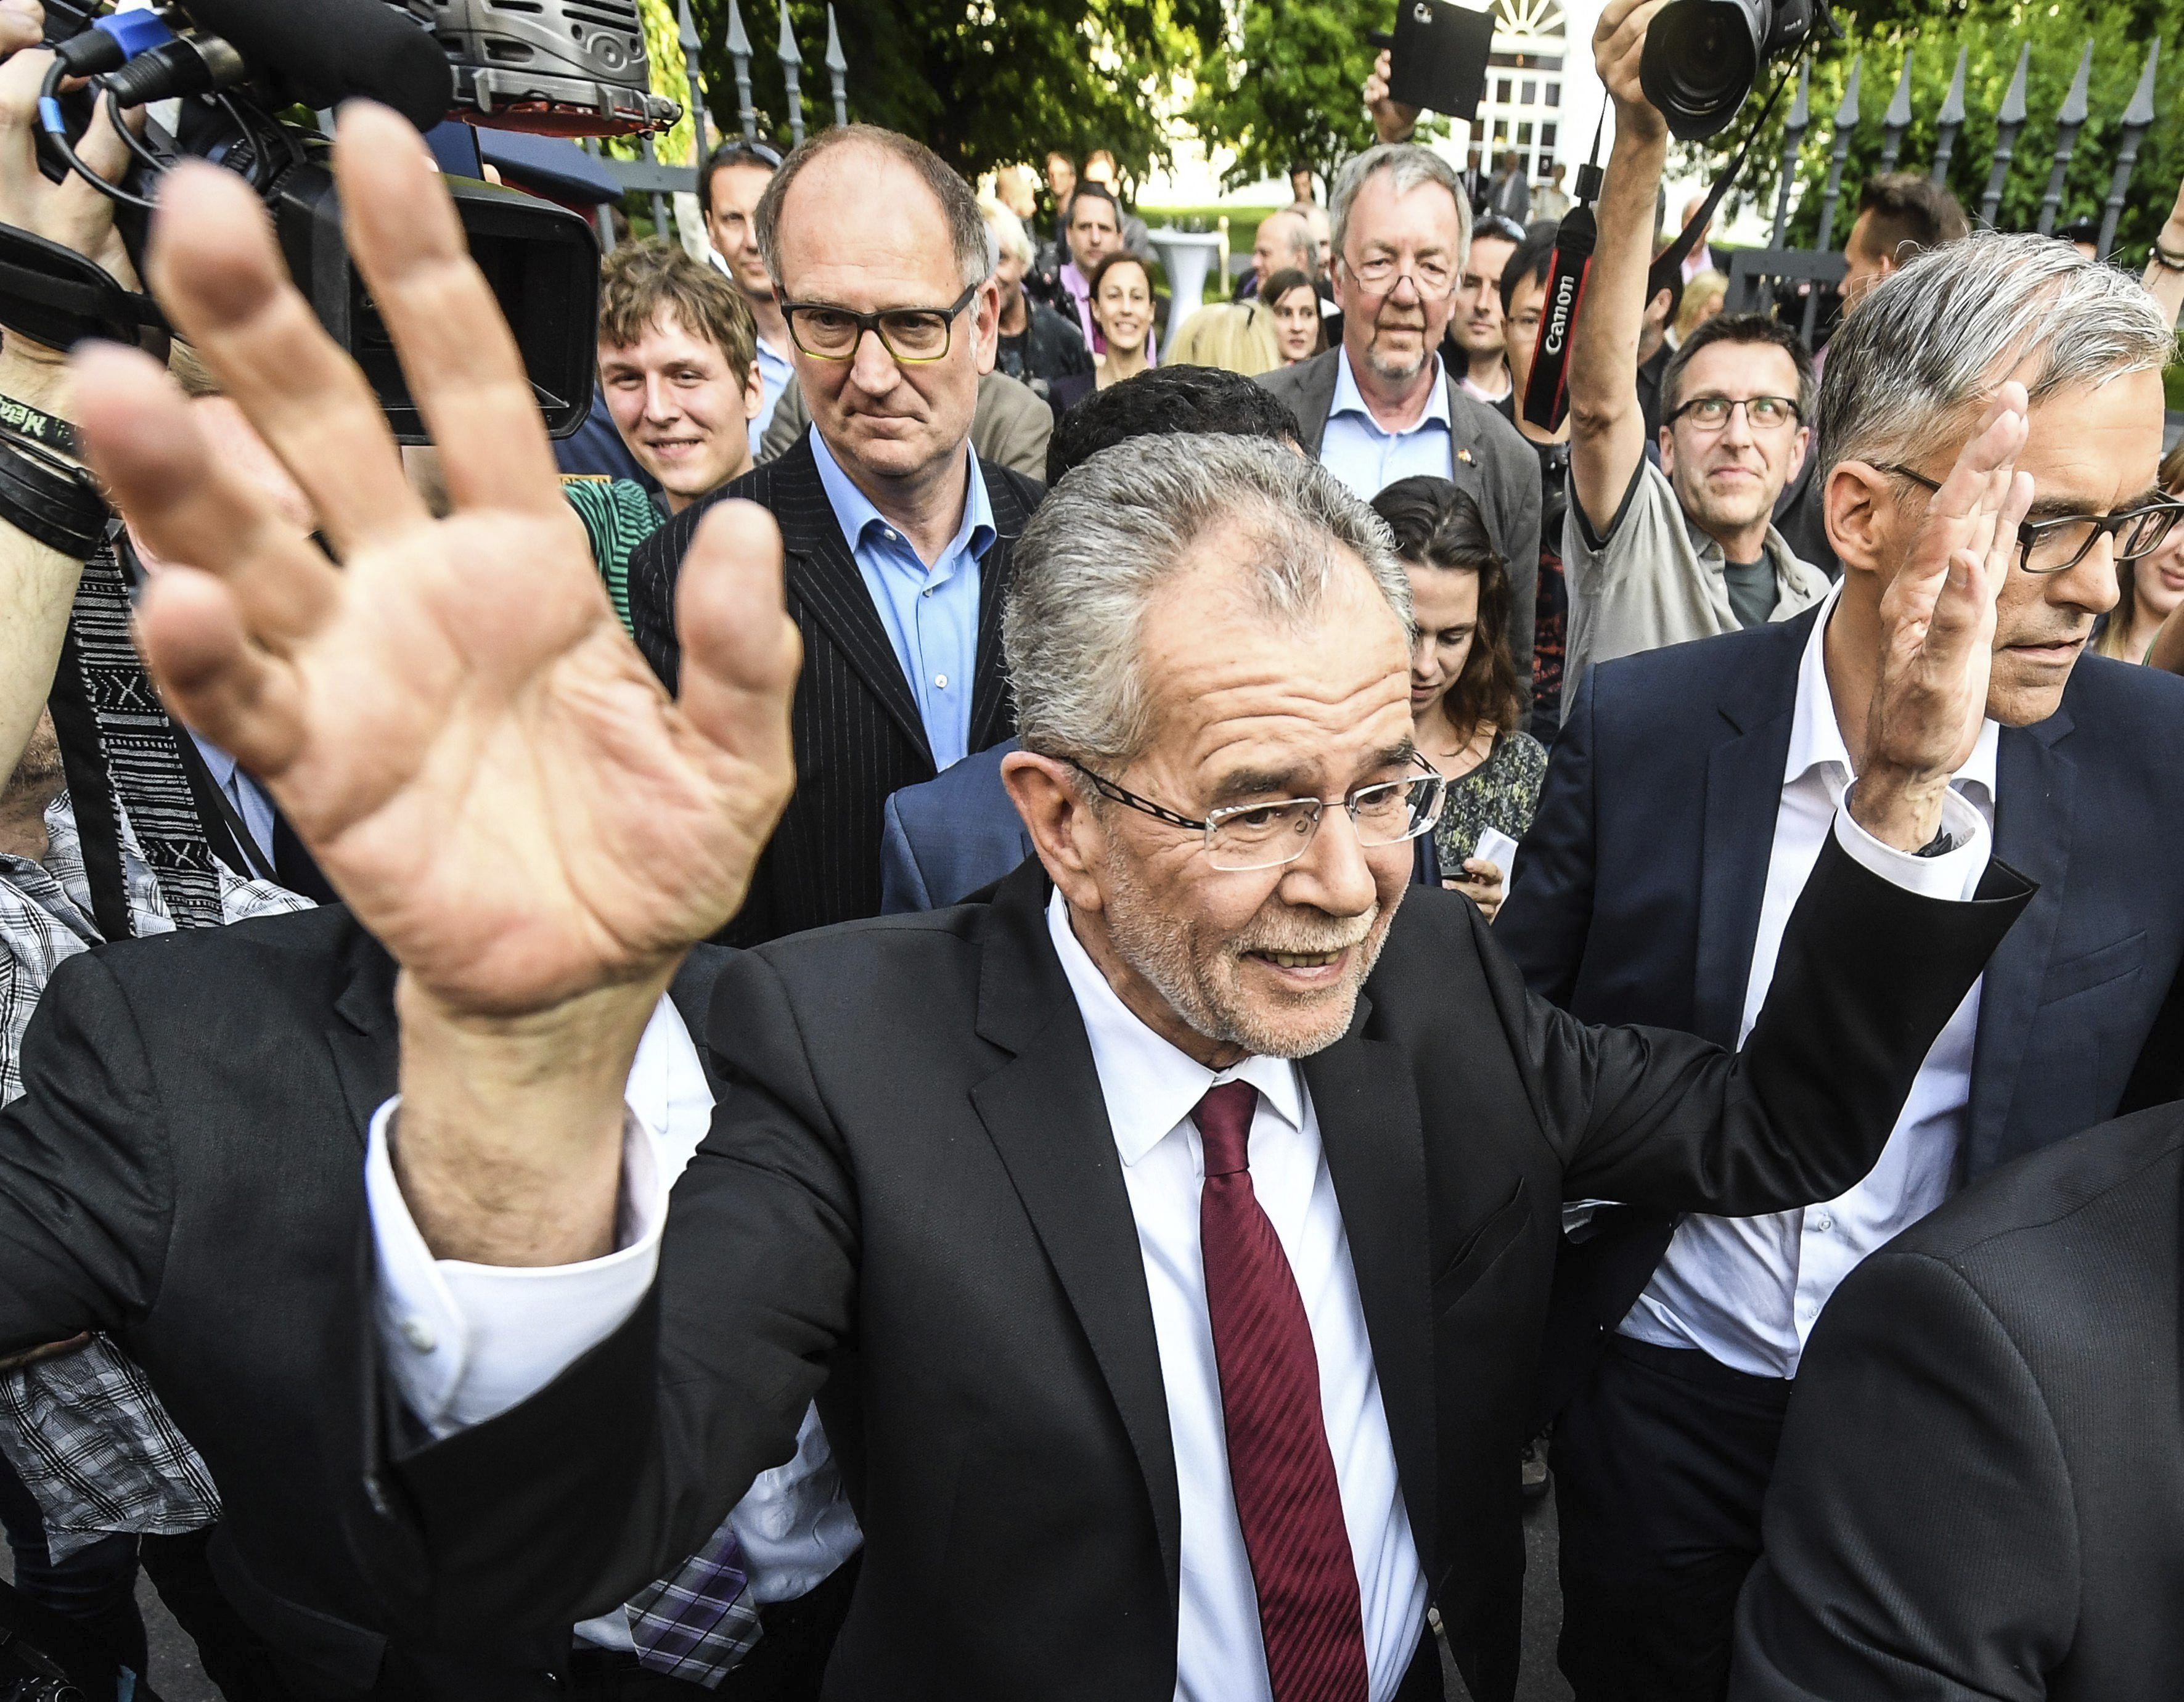 Austria tendrá un presidente Verde, después de un ajustado final con la ultraderecha